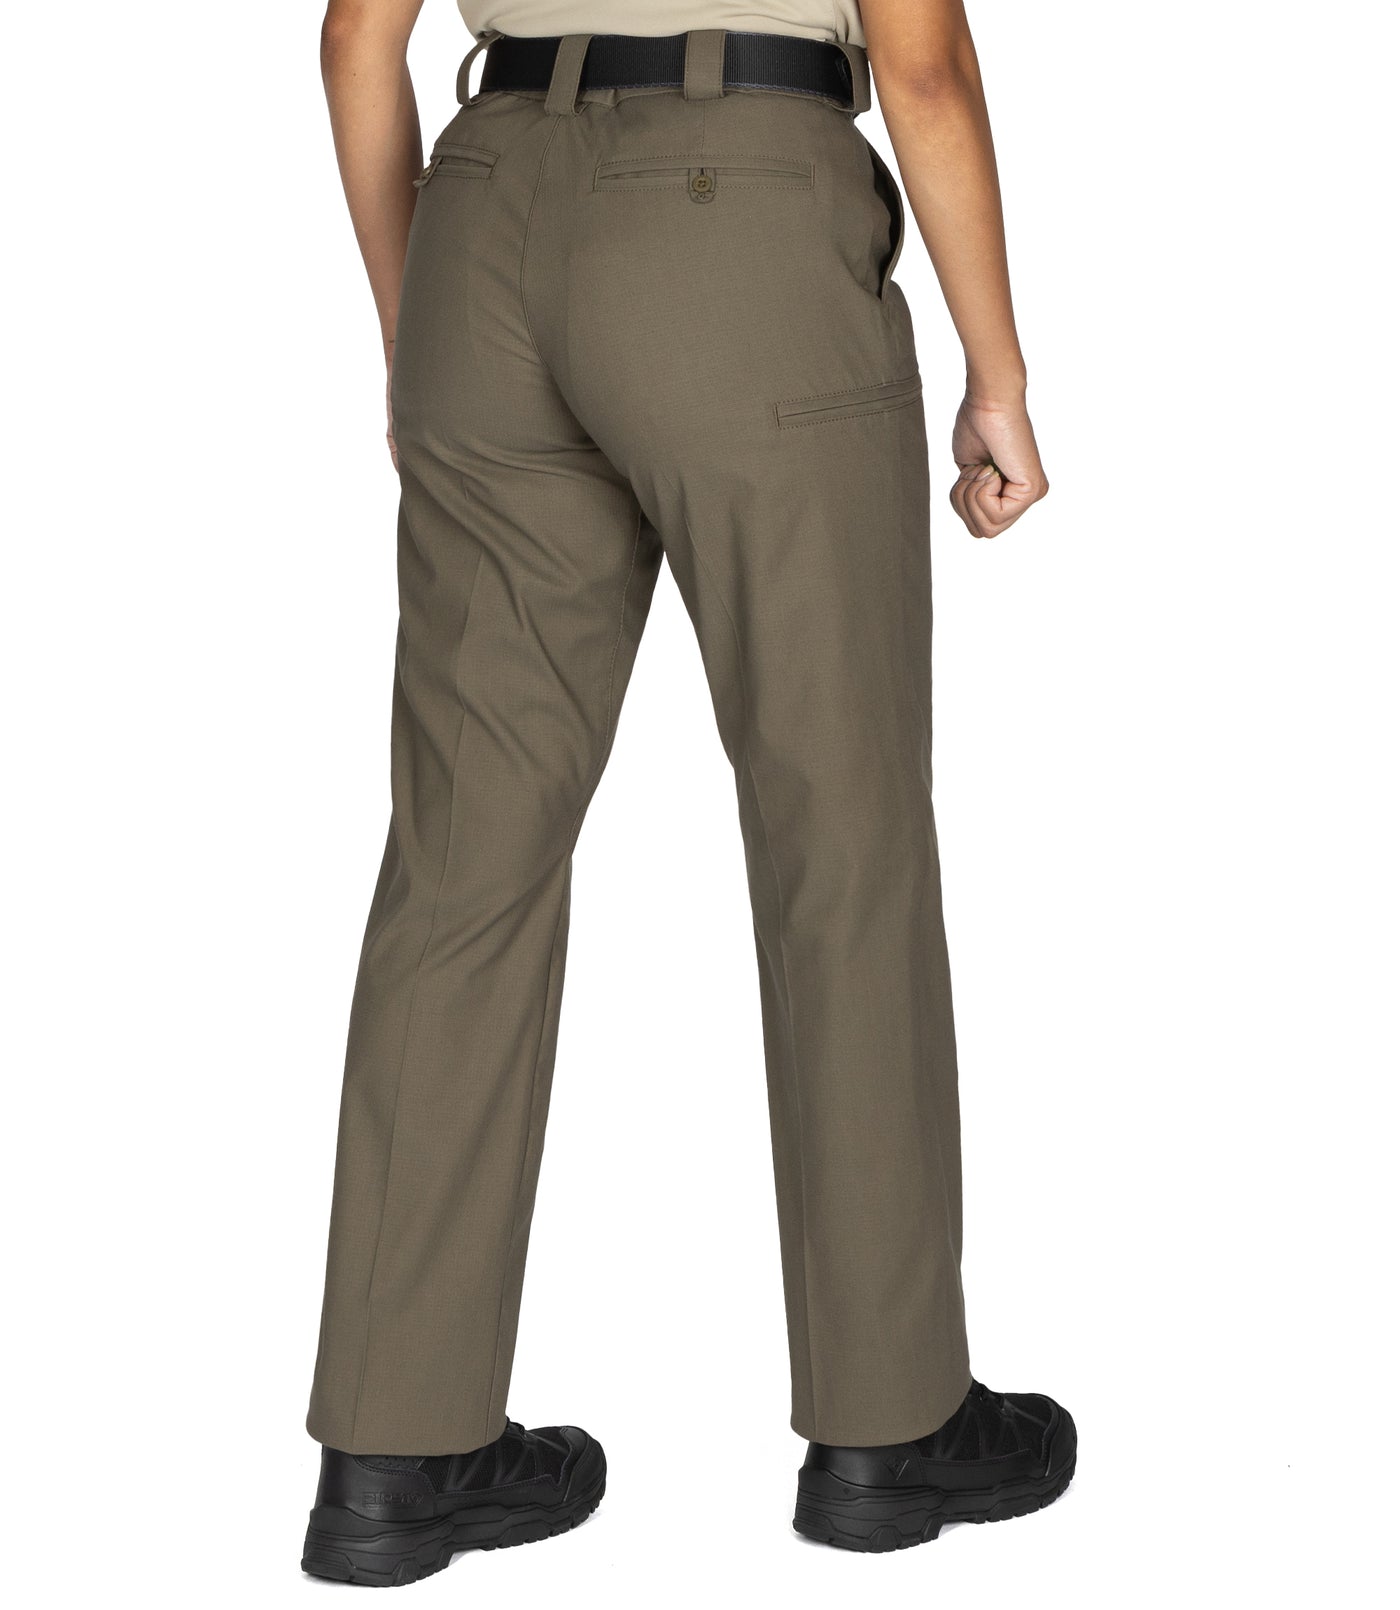 Galls Pro Women's Tac Force Tactical Pants